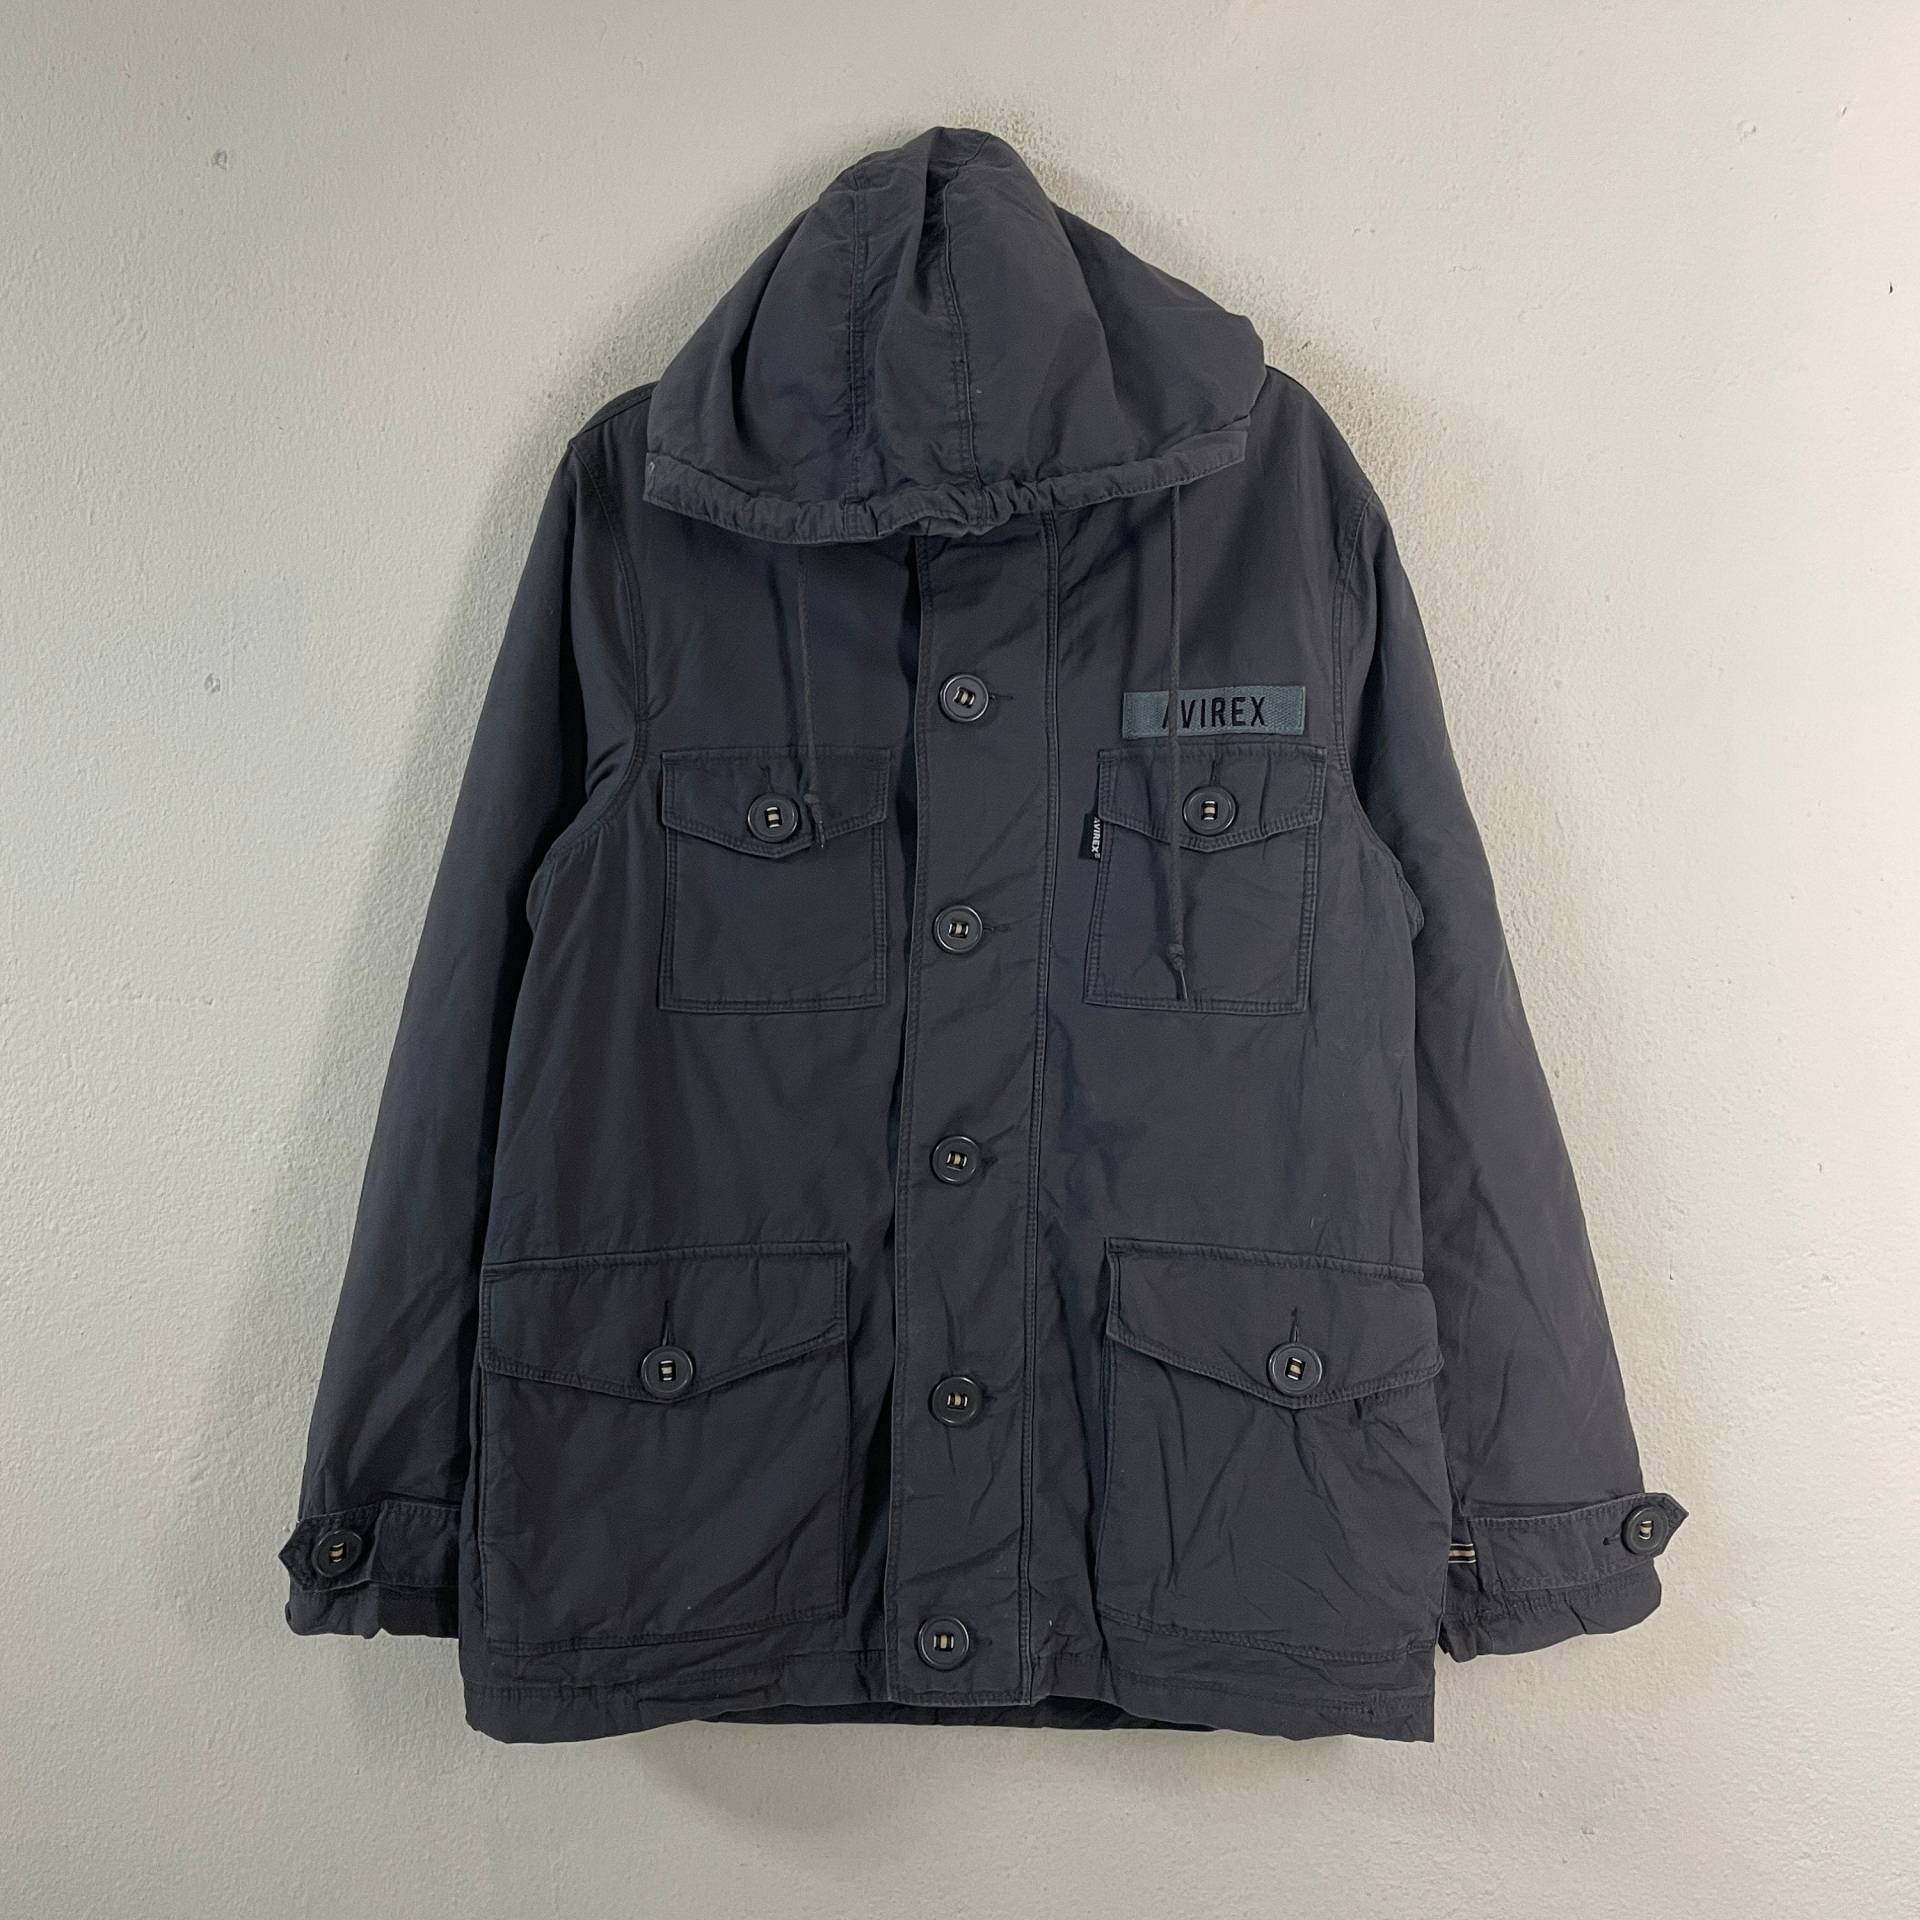 Vintage Avirex Militär Jacke Mit Vielen Taschen Kleines Logo Größe L von TheShahStore